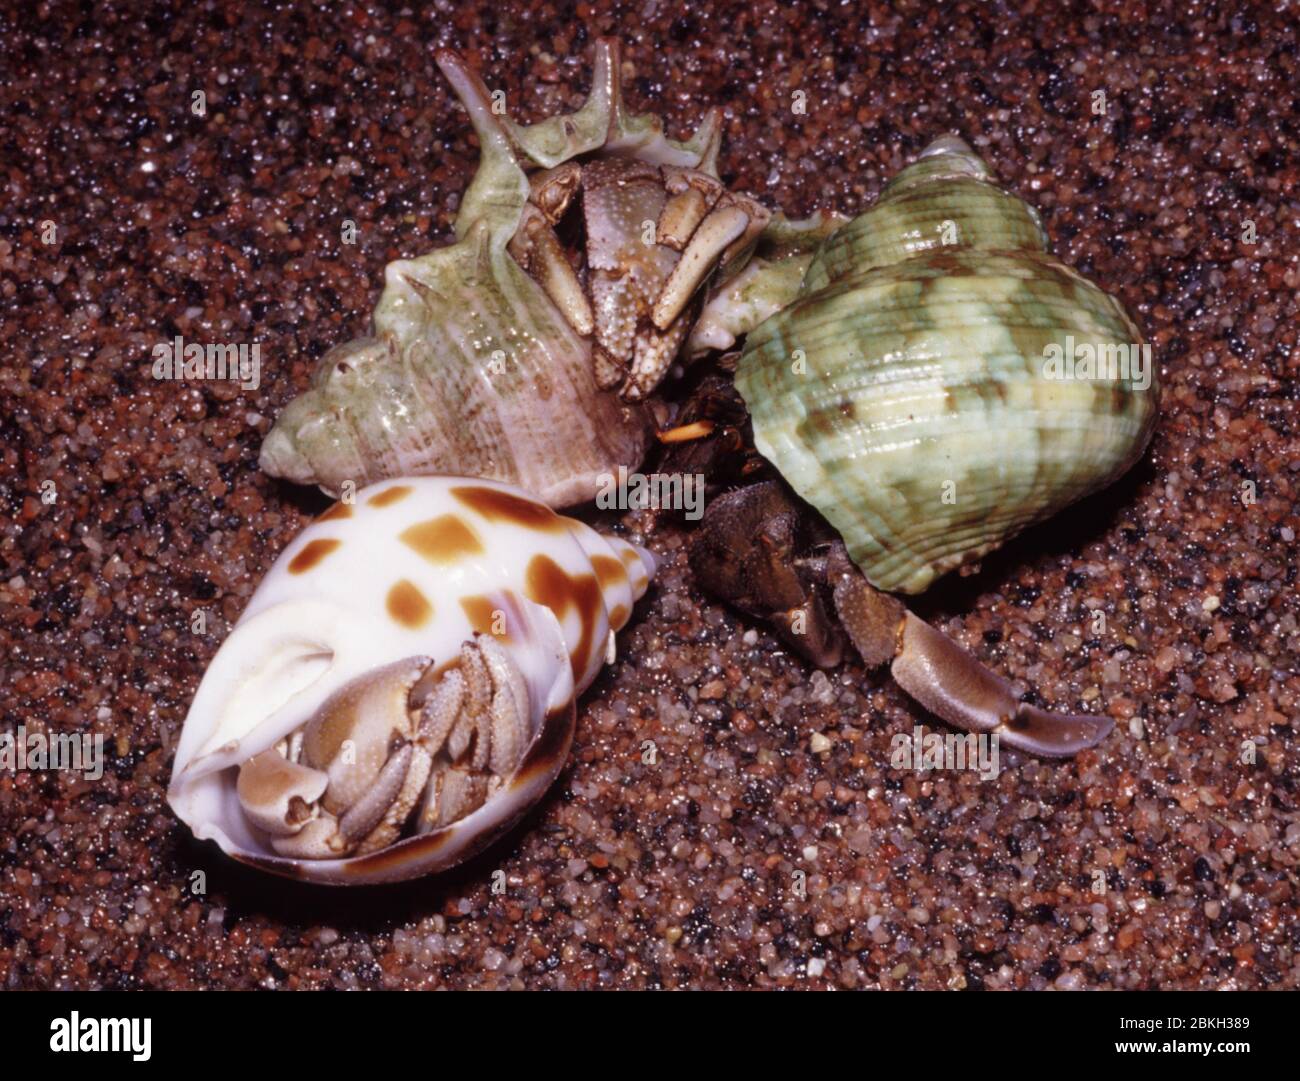 Tawny land hermit crab, Coenobita clypeatus Stock Photo